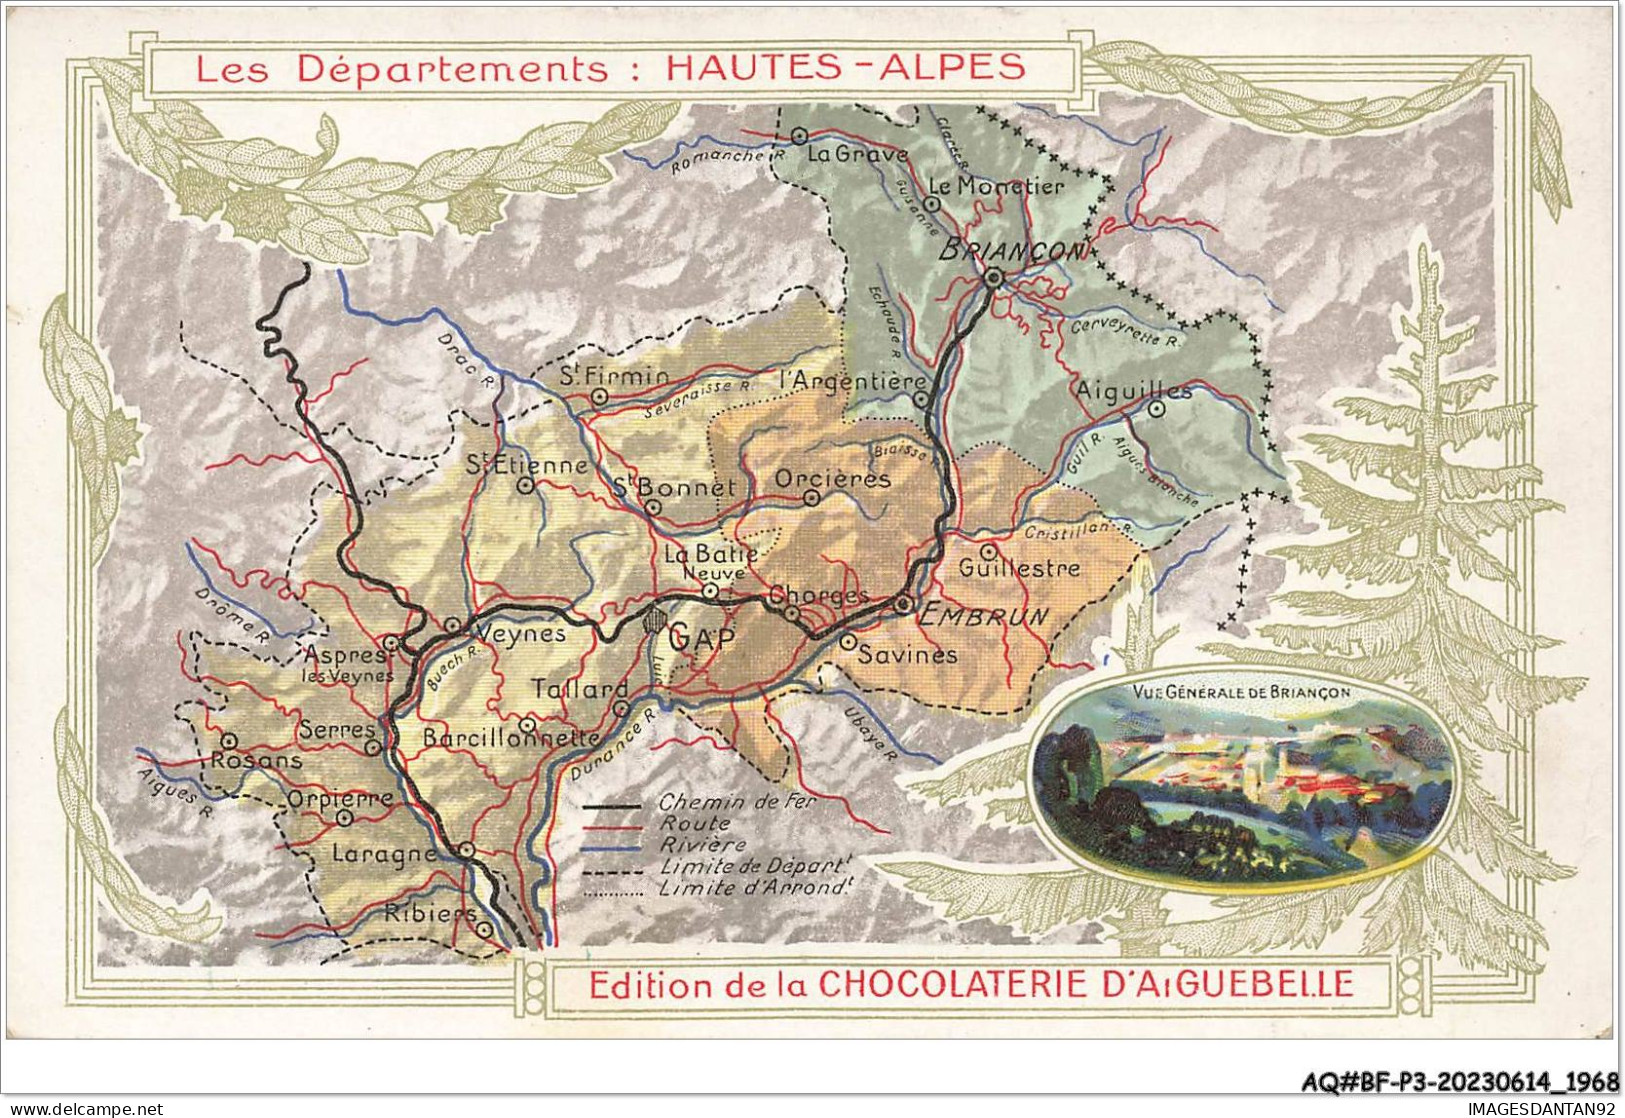 AQ#BFP3-CHROMOS-0982 - CHOCOLAT D'AIGUEBELLE - Les Départements - Hautes-Alpes - Aiguebelle